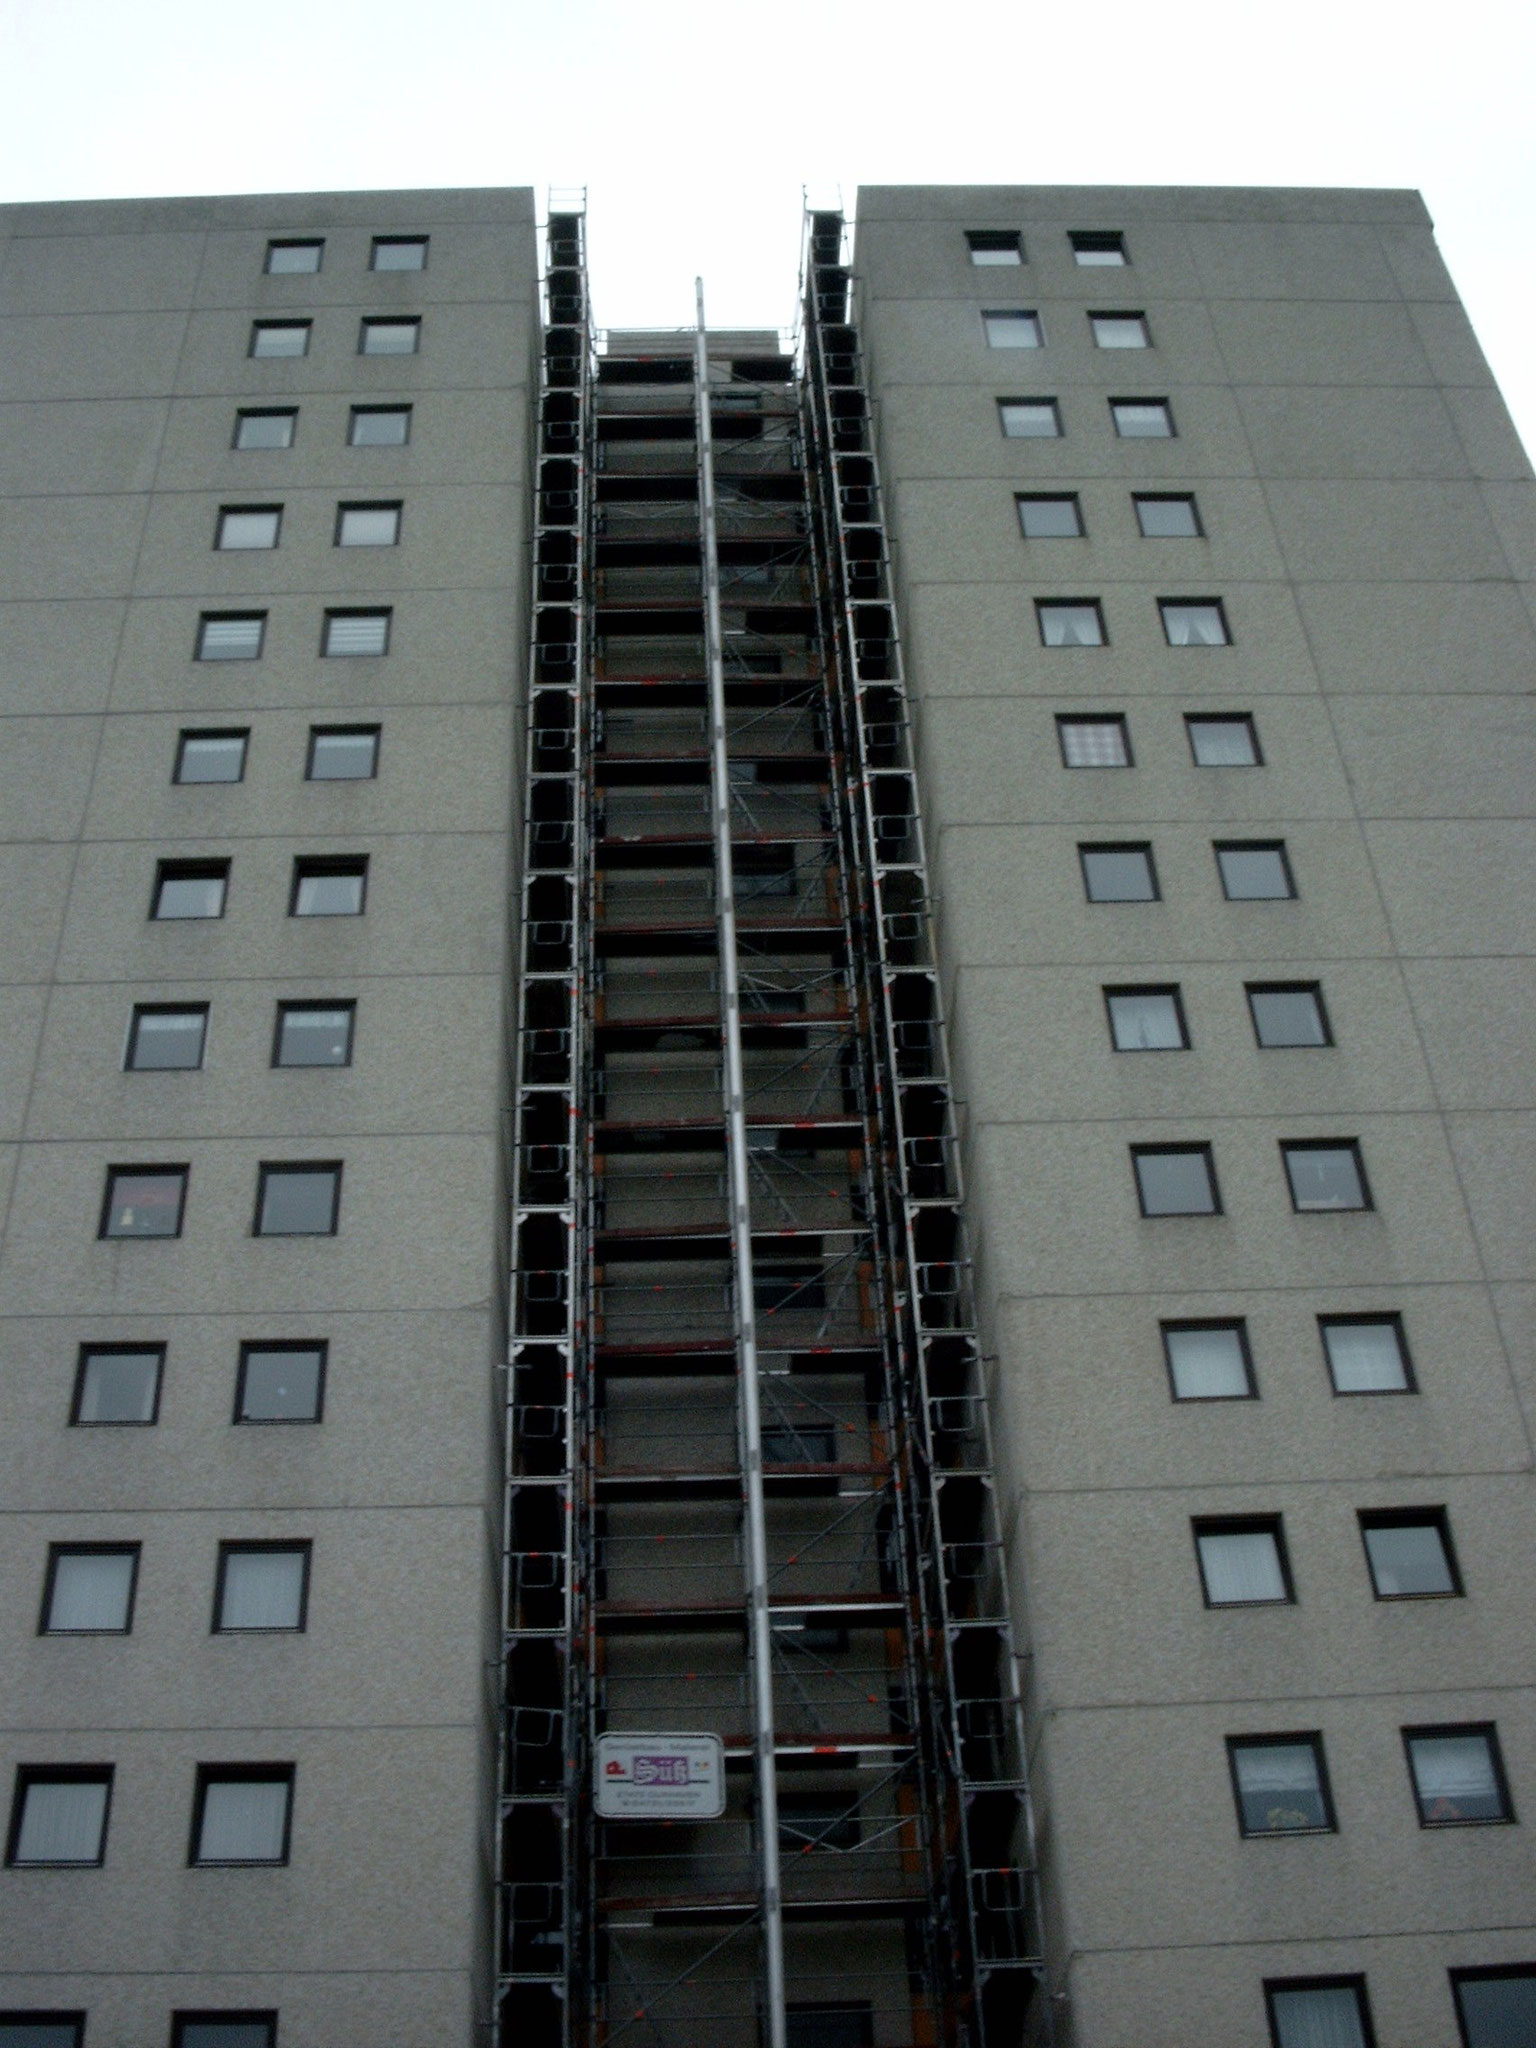 2002 - Haus Frische Brise Gerüstbauarbeiten